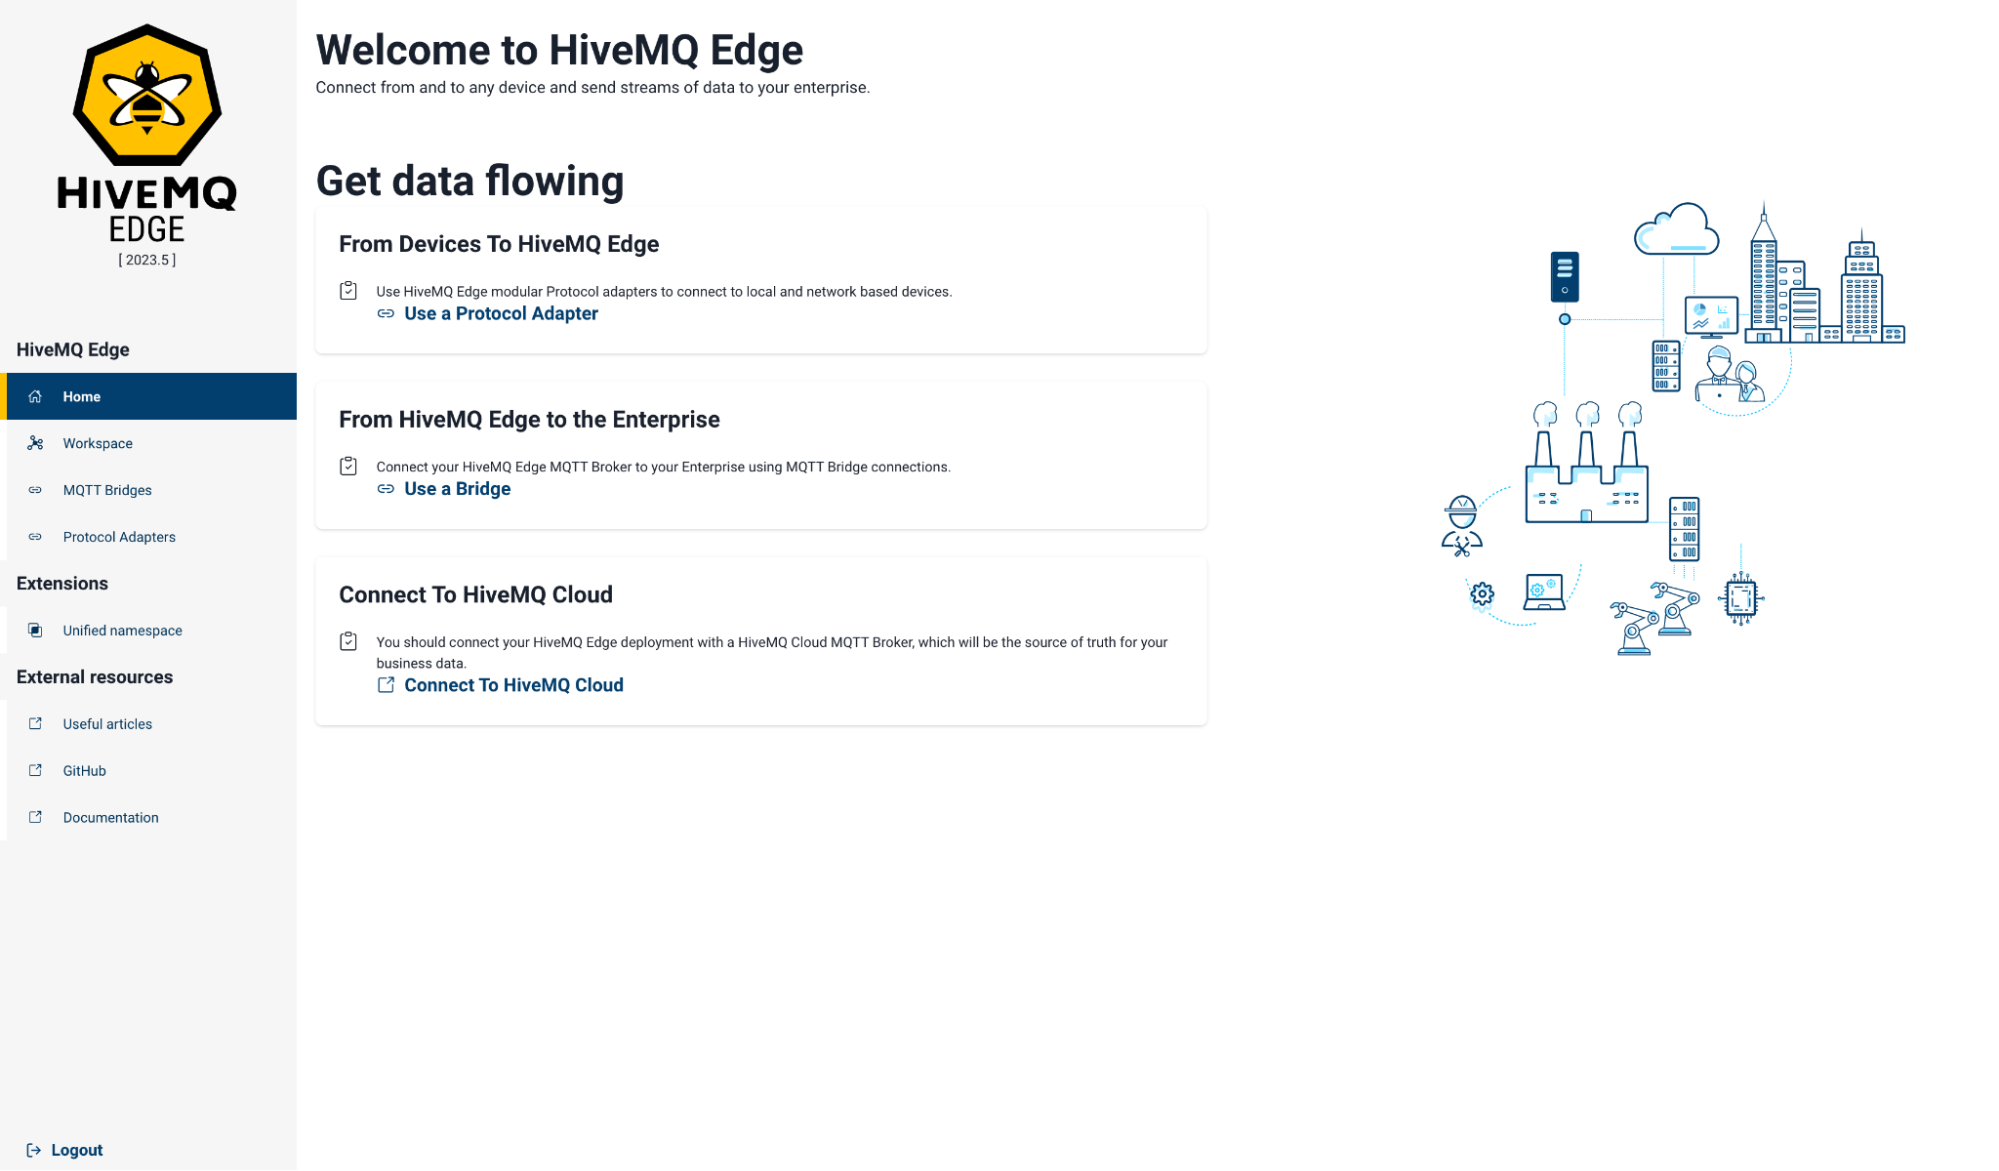 Logging into HiveMQ Edge console